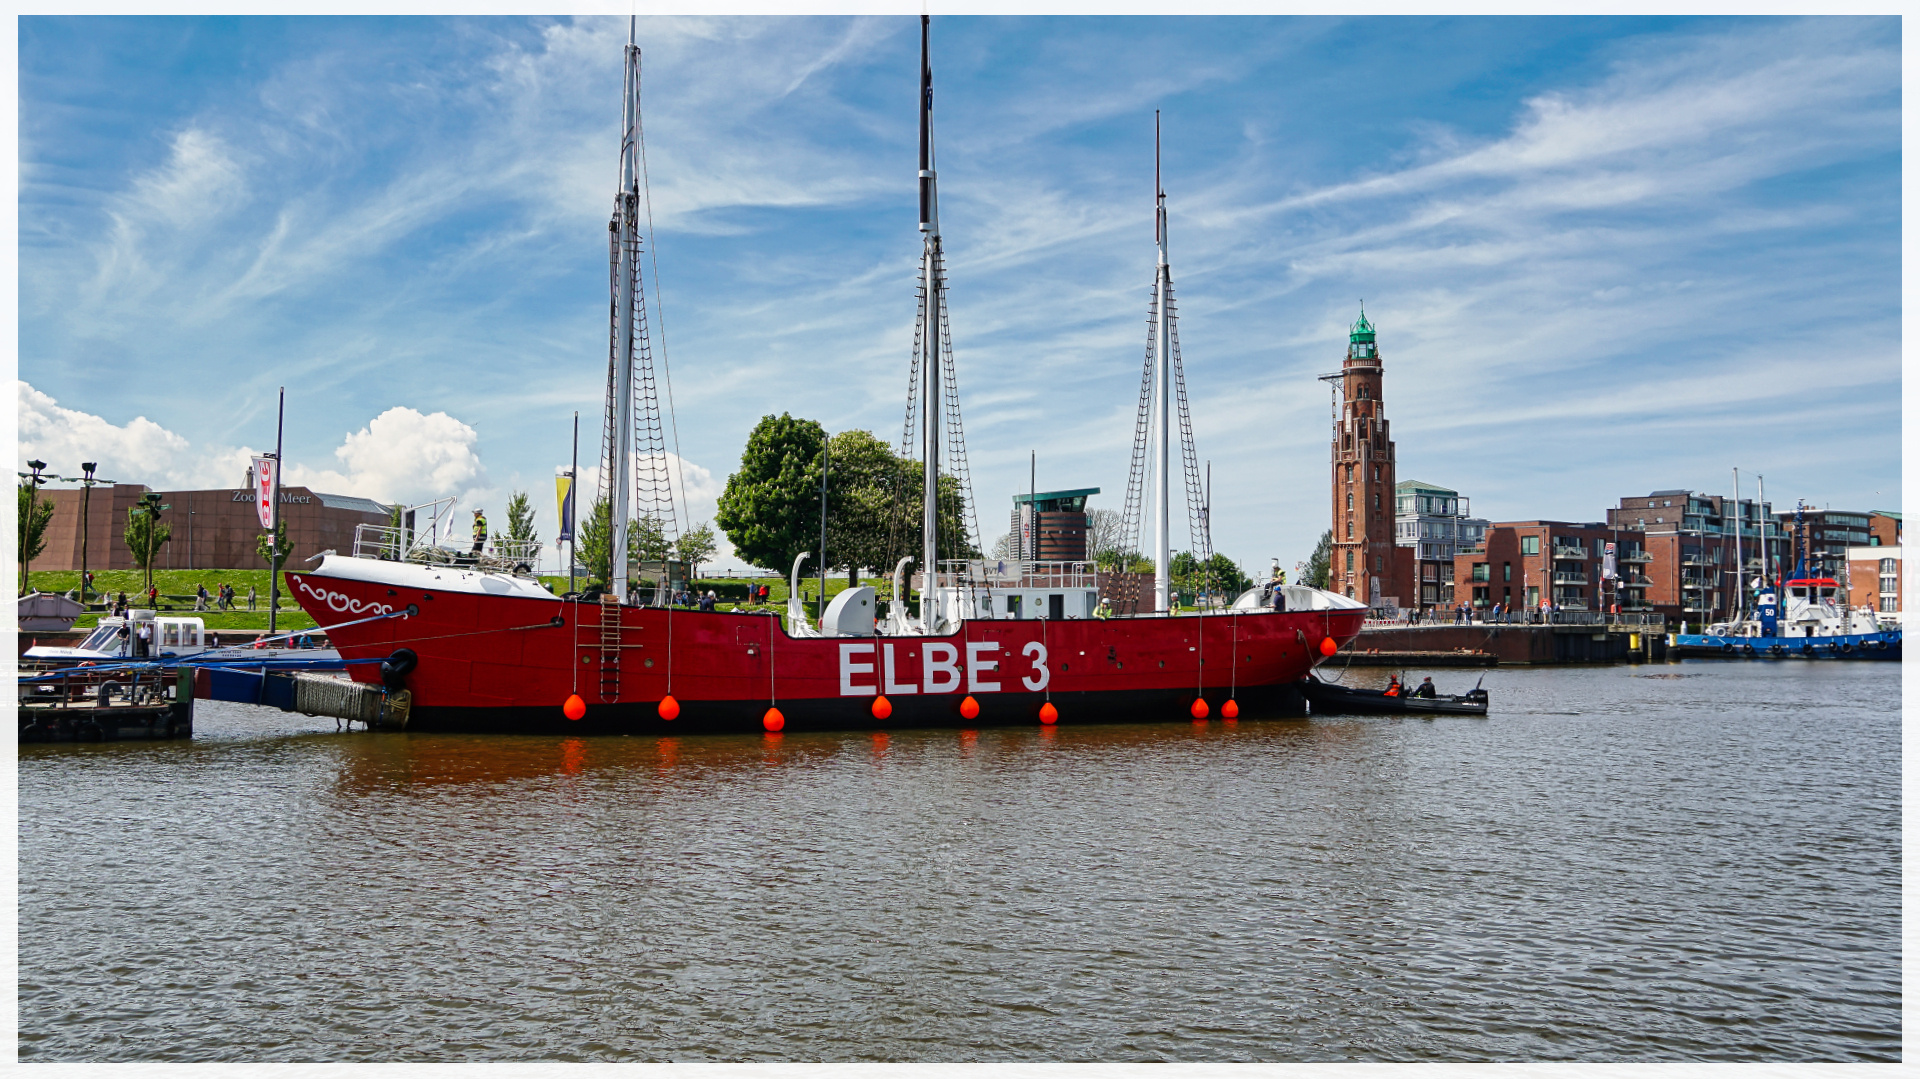 das Feuerschiff "Elbe 3" nach Restaurierung im Neuen Hafen